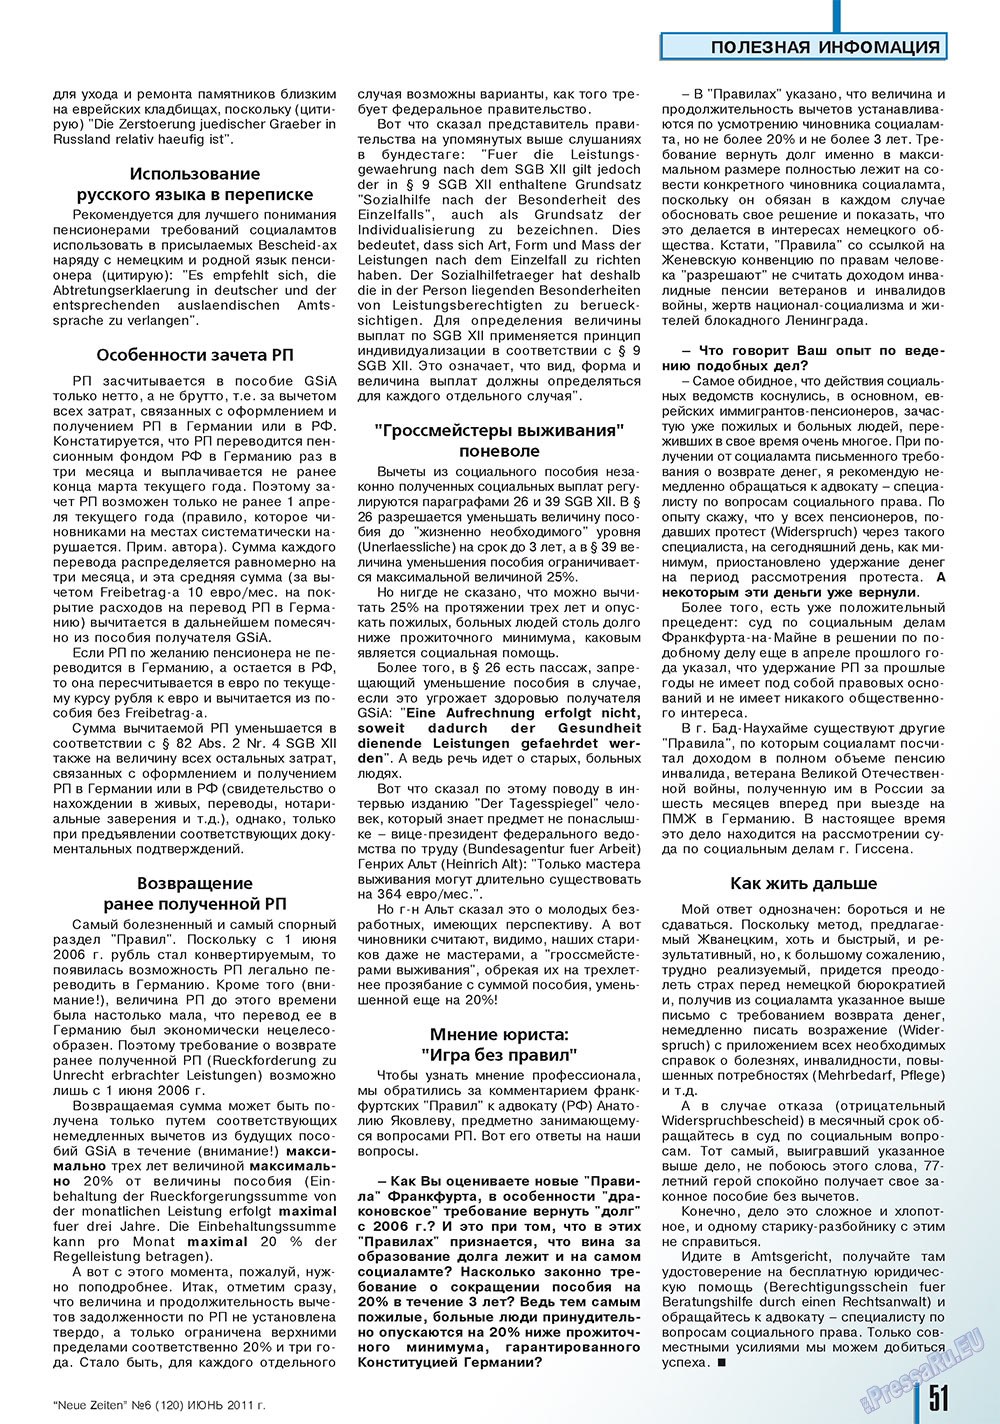 Neue Zeiten, журнал. 2011 №6 стр.51